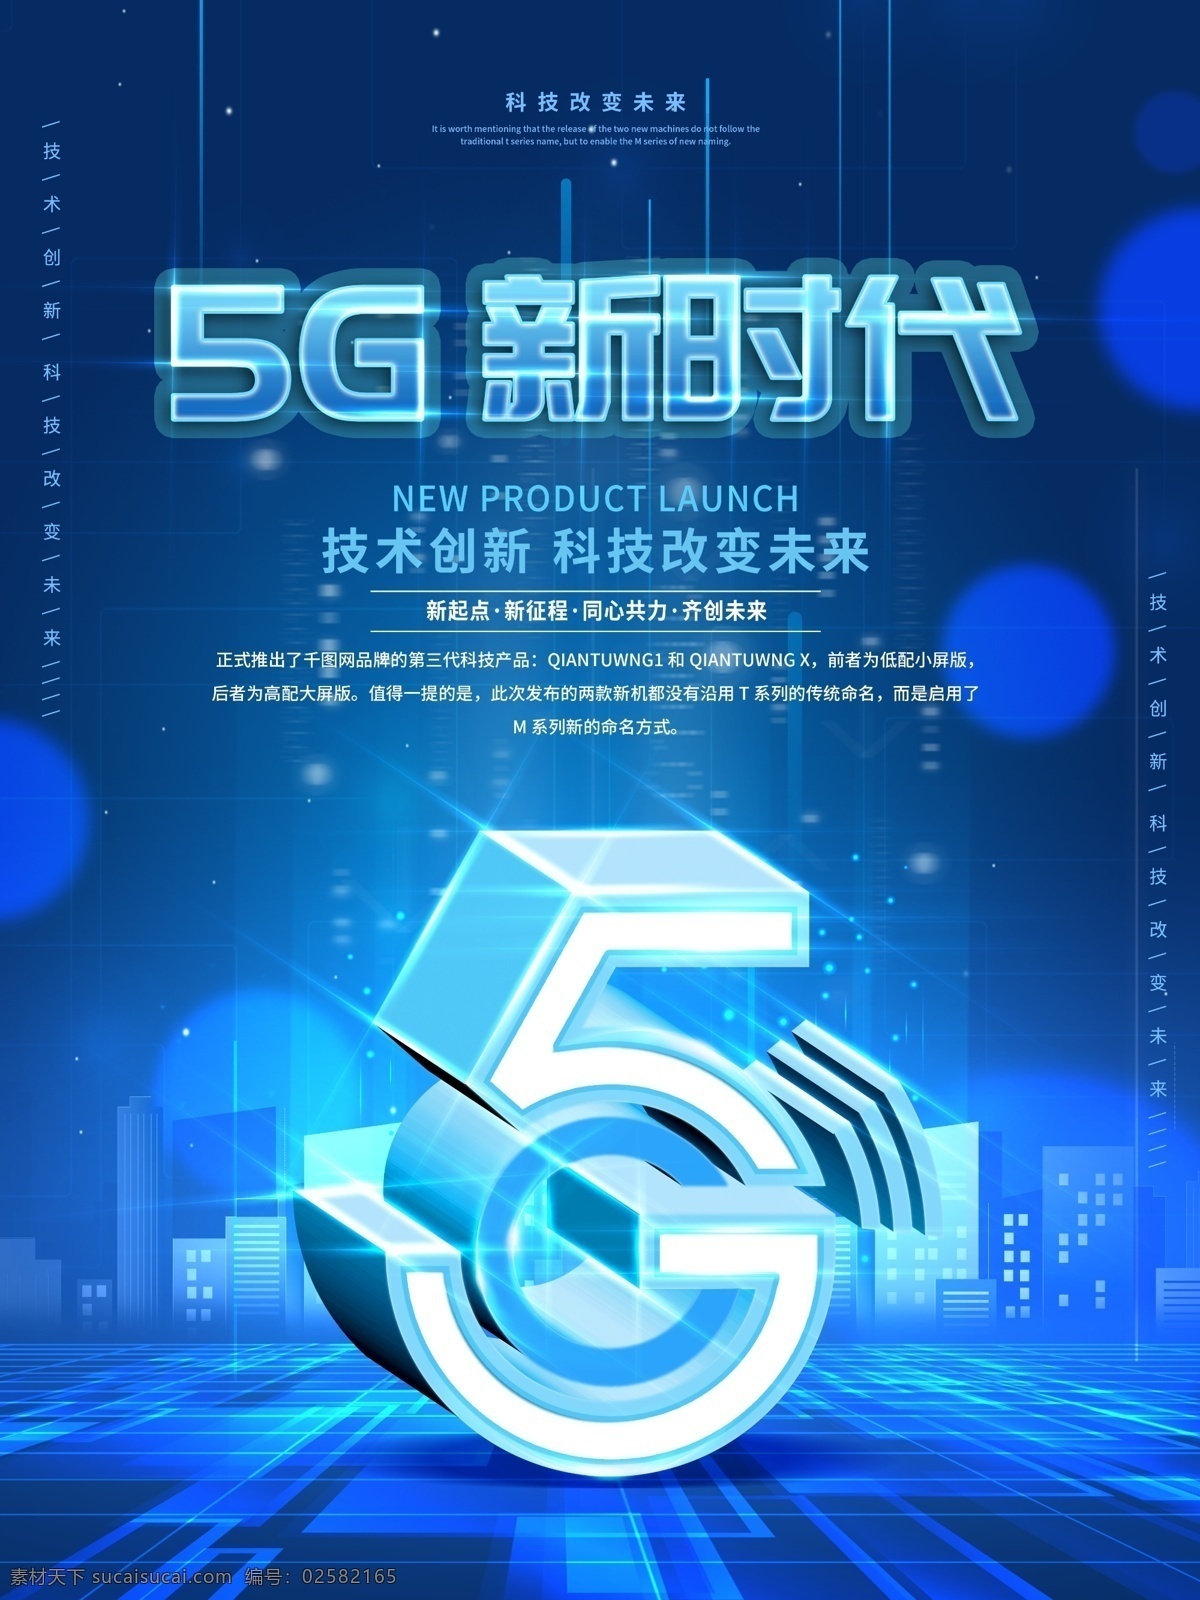 原创 创意 5g 时代 科技 发布会 宣传 5g时代 海报